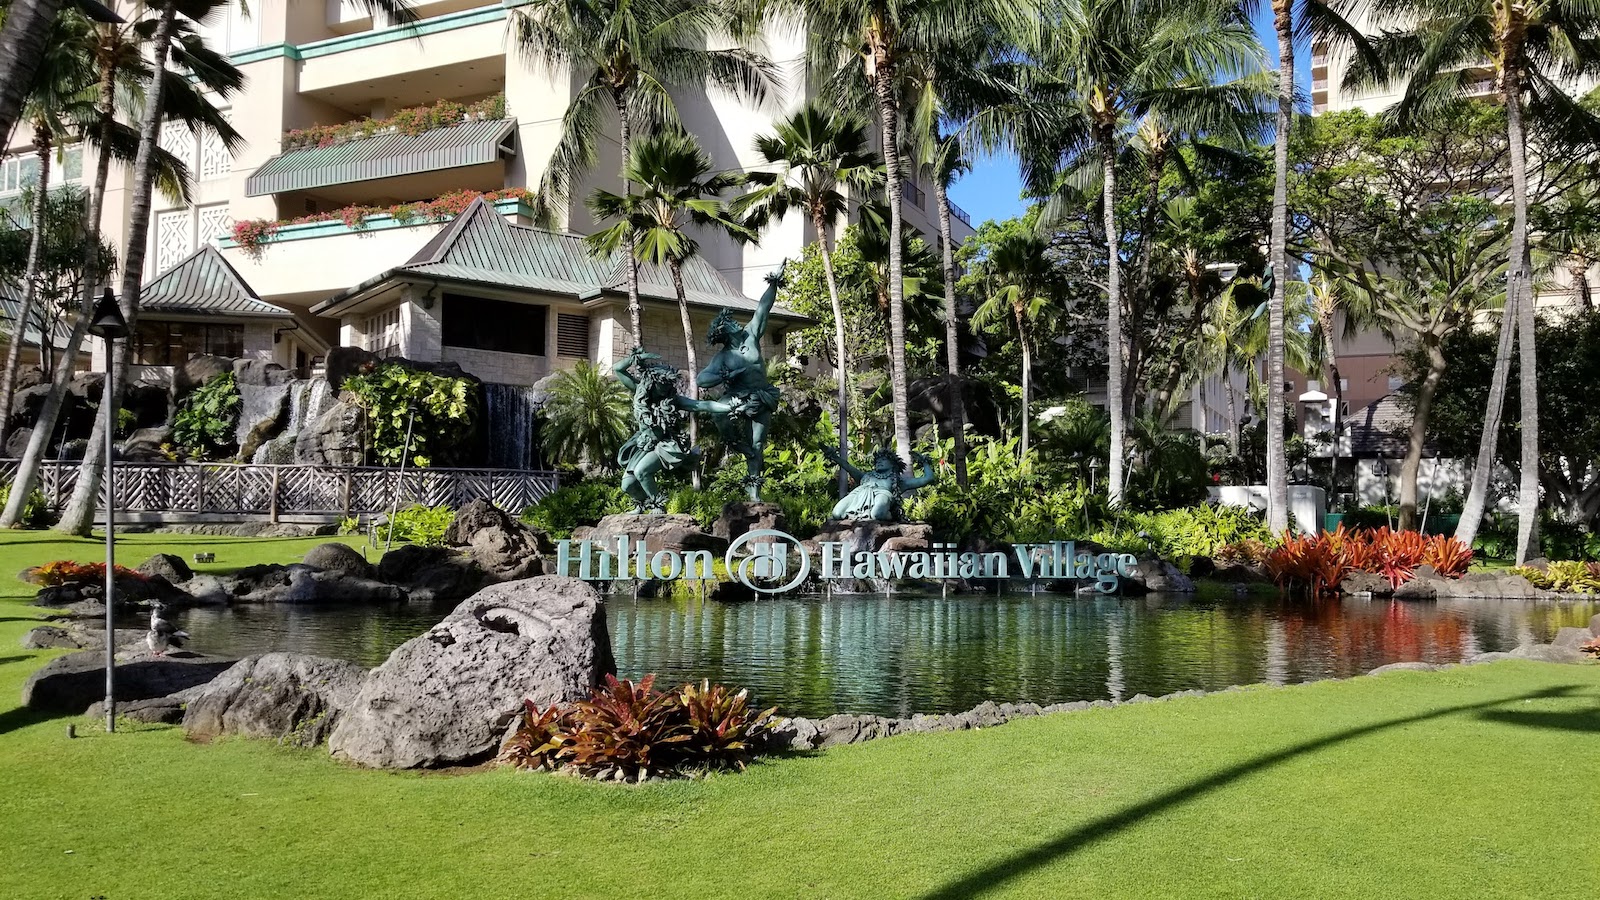 The Ali'I at Hilton Hawaiian Village